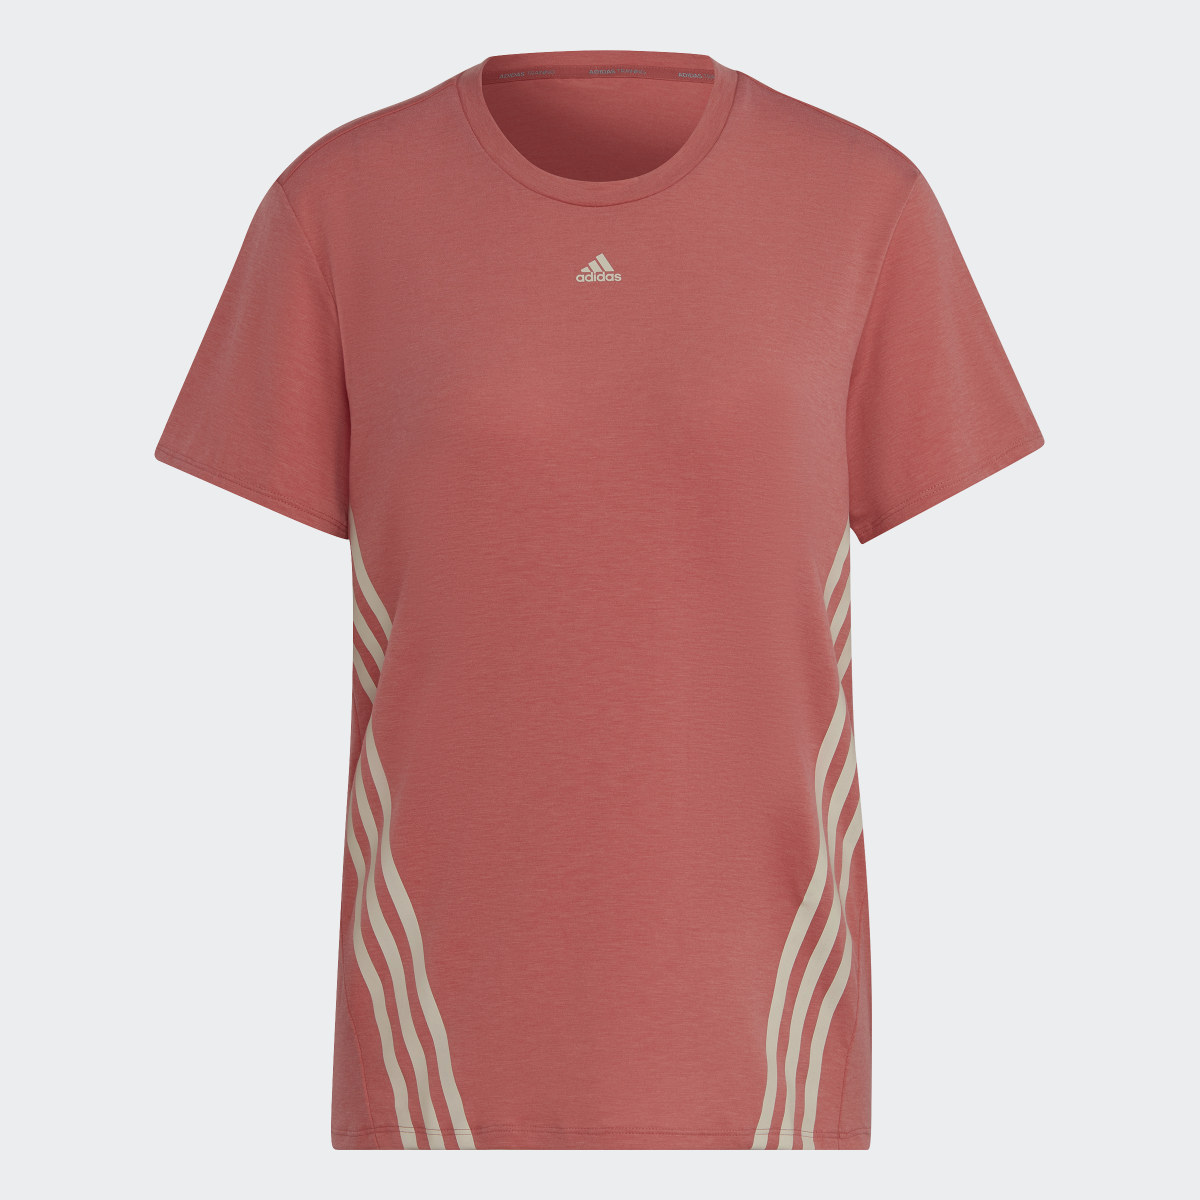 Adidas T-shirt Trainicons 3-Stripes. 5